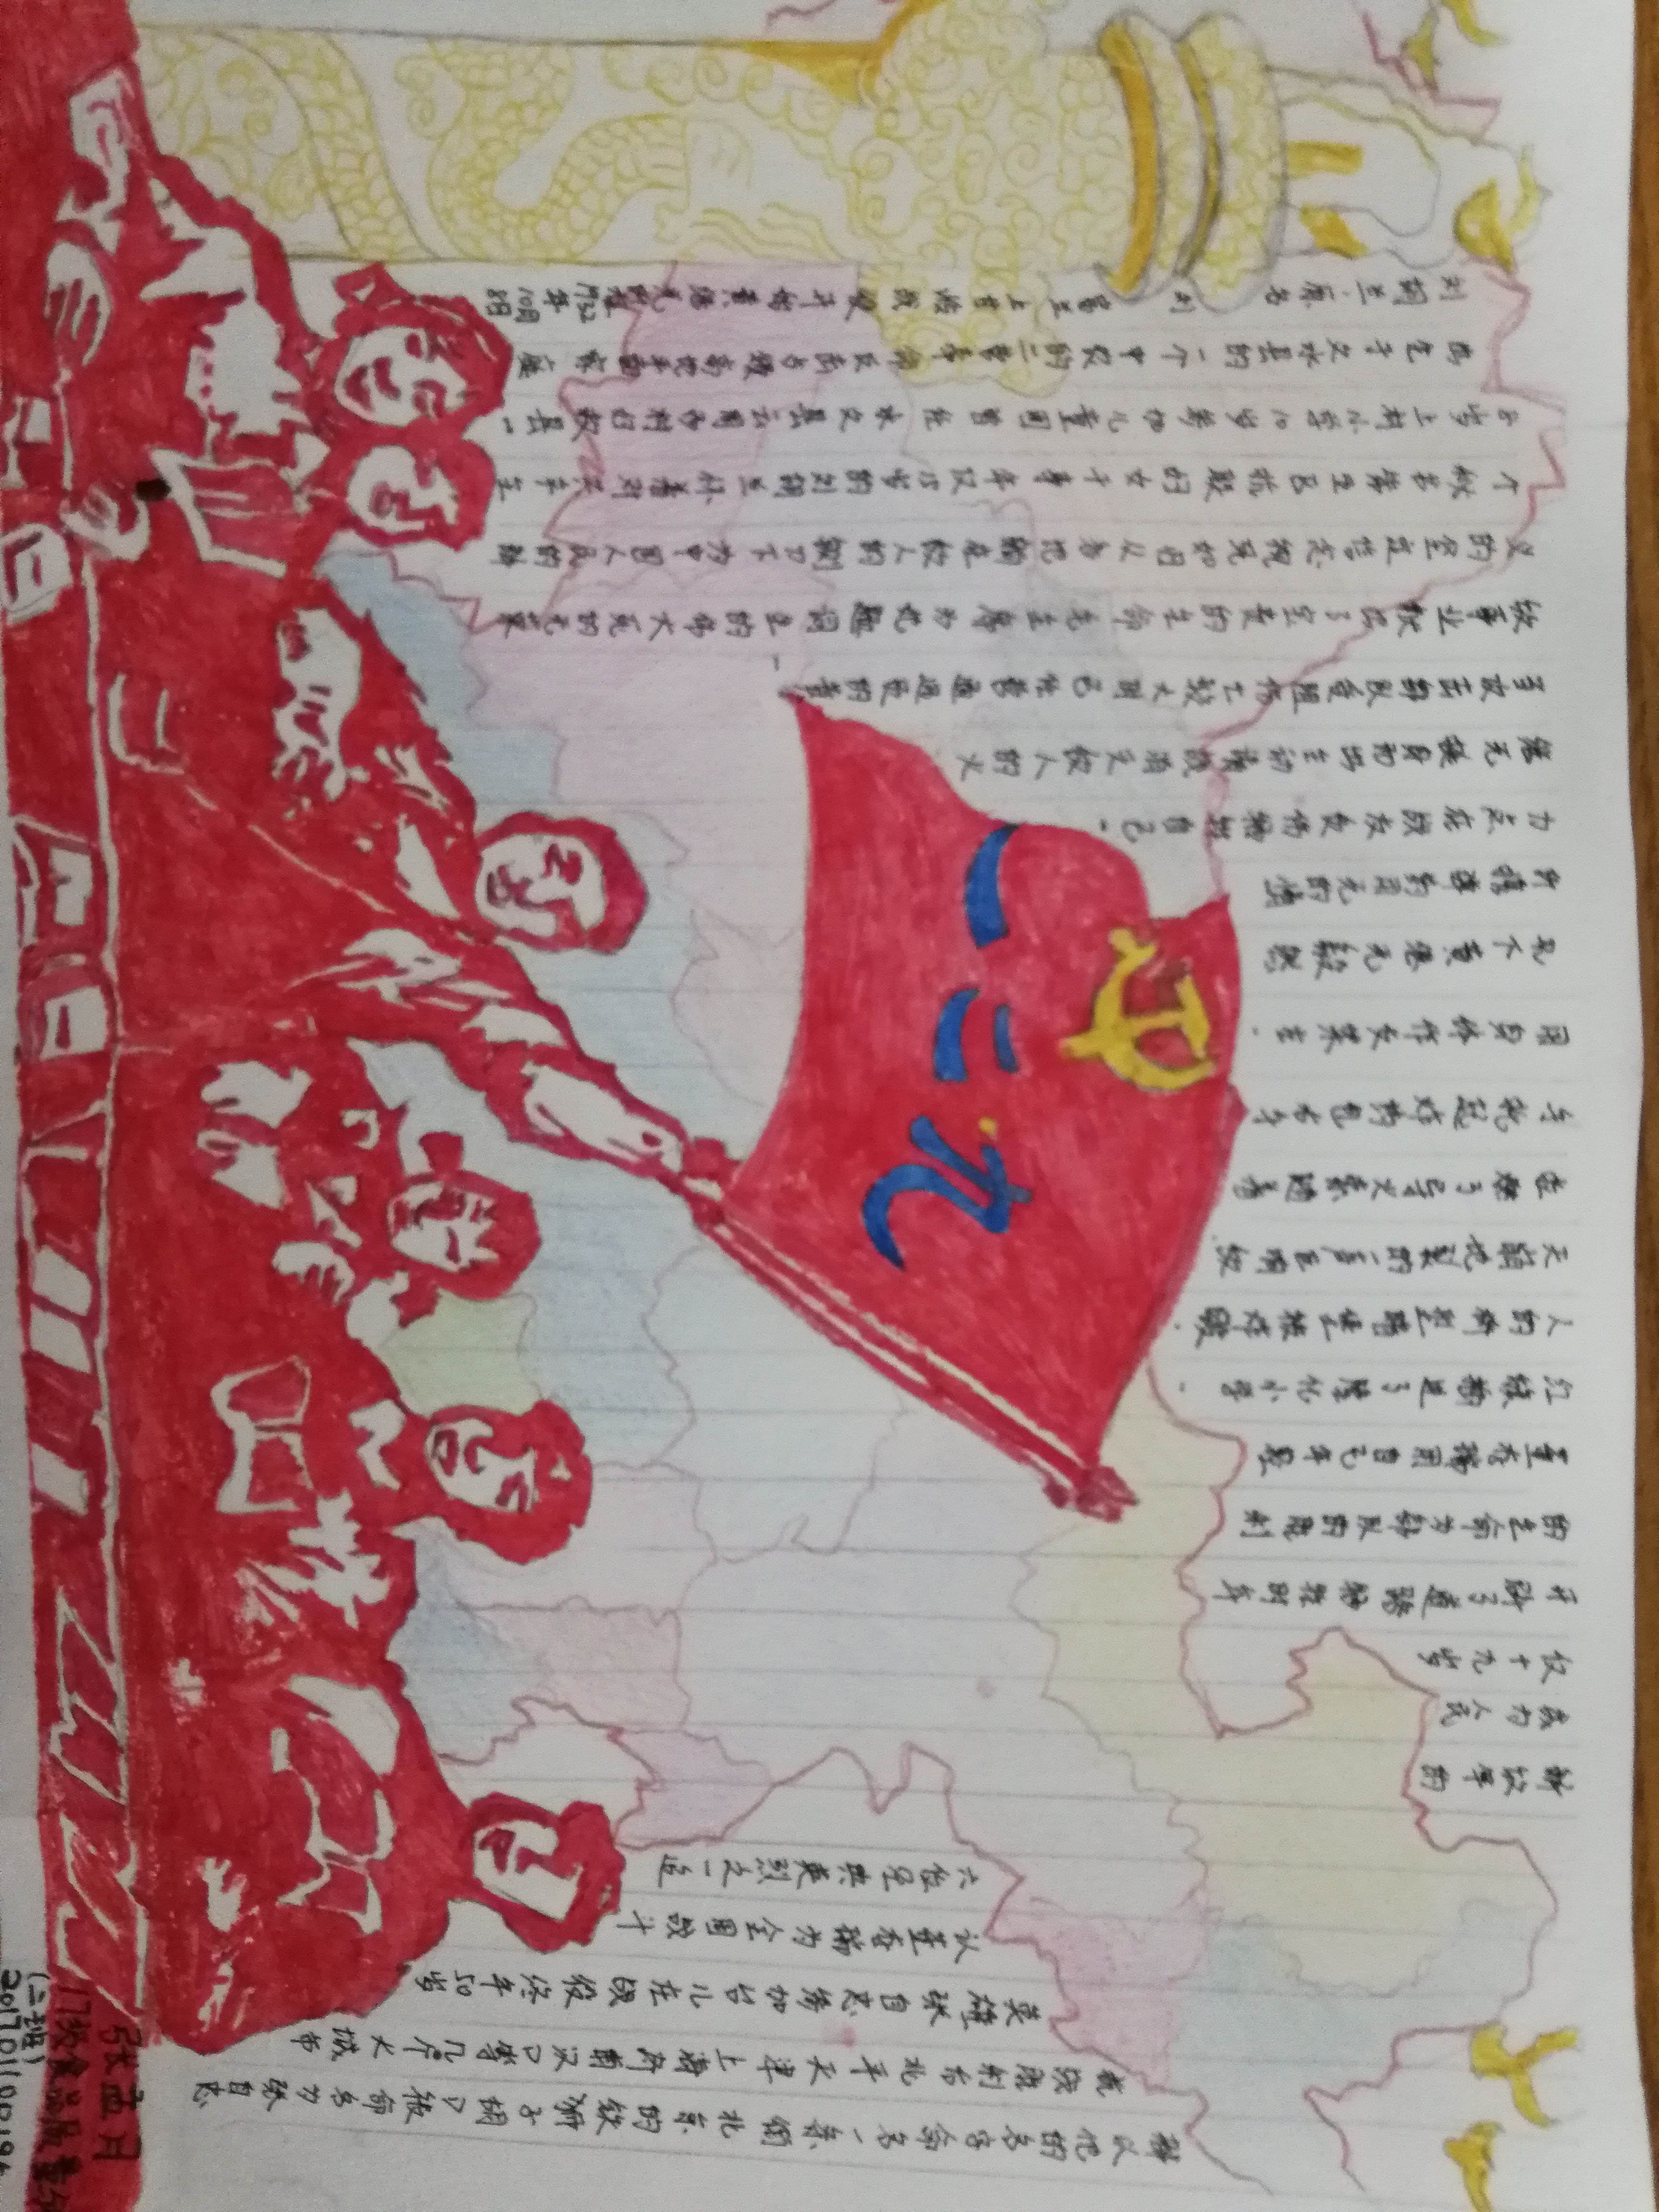 "重温红色经典,传承革命圣火"手抄报制作活动